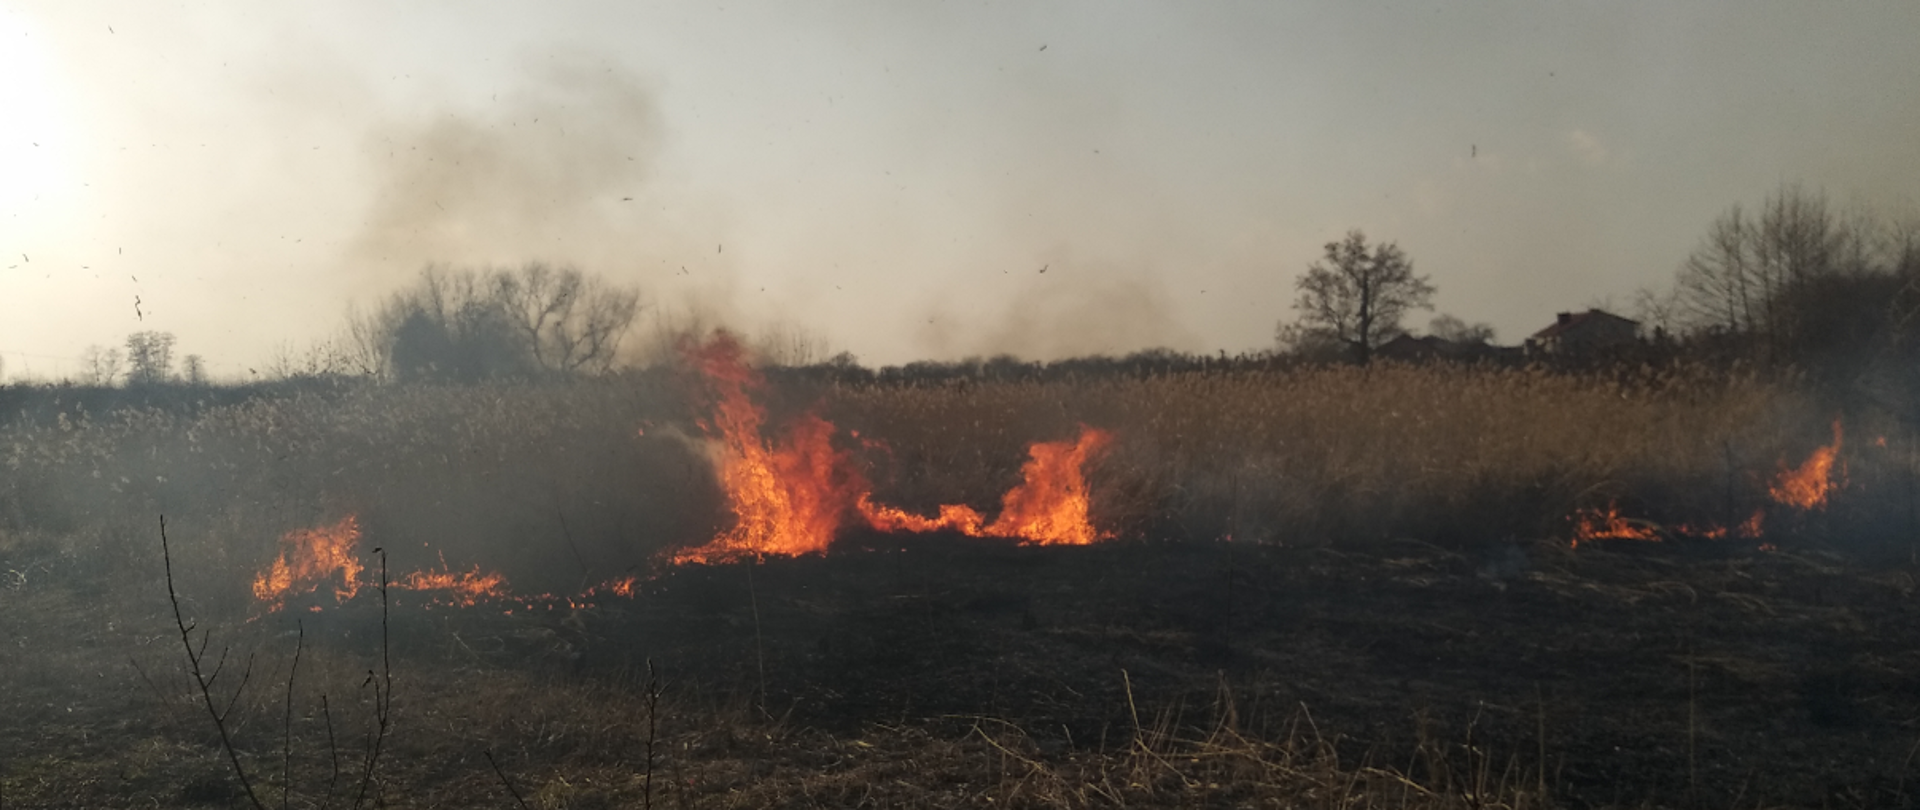 zdjęcie zrobione w dzień. Na zdjęciu widać palącą się trawę na nieużytkach. Na zdjęciu widać ogień i dym. 